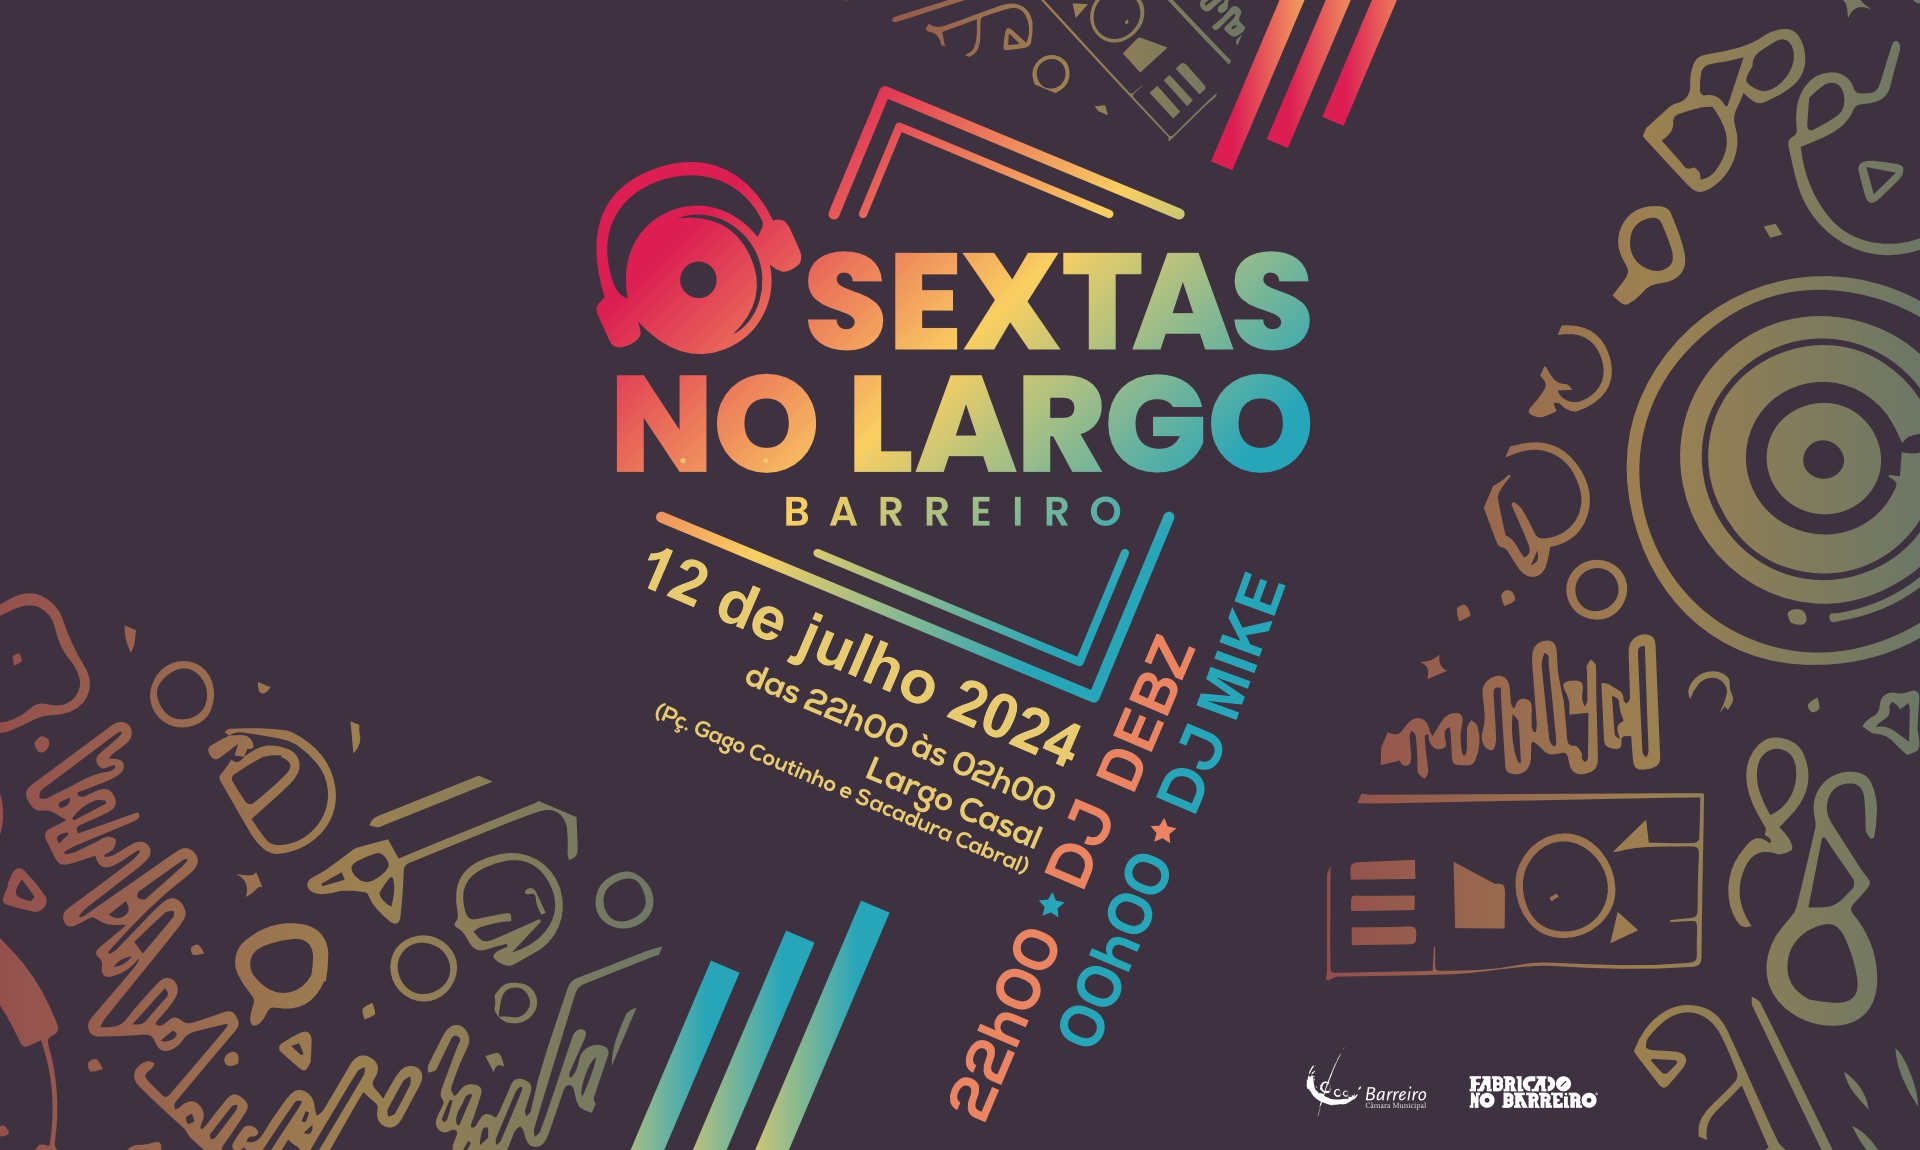 Sextas no Largo | 12 julho | 22h00 às 2h00 | Largo Casal (Praça Gago Coutinho e Sacadura Cabral)